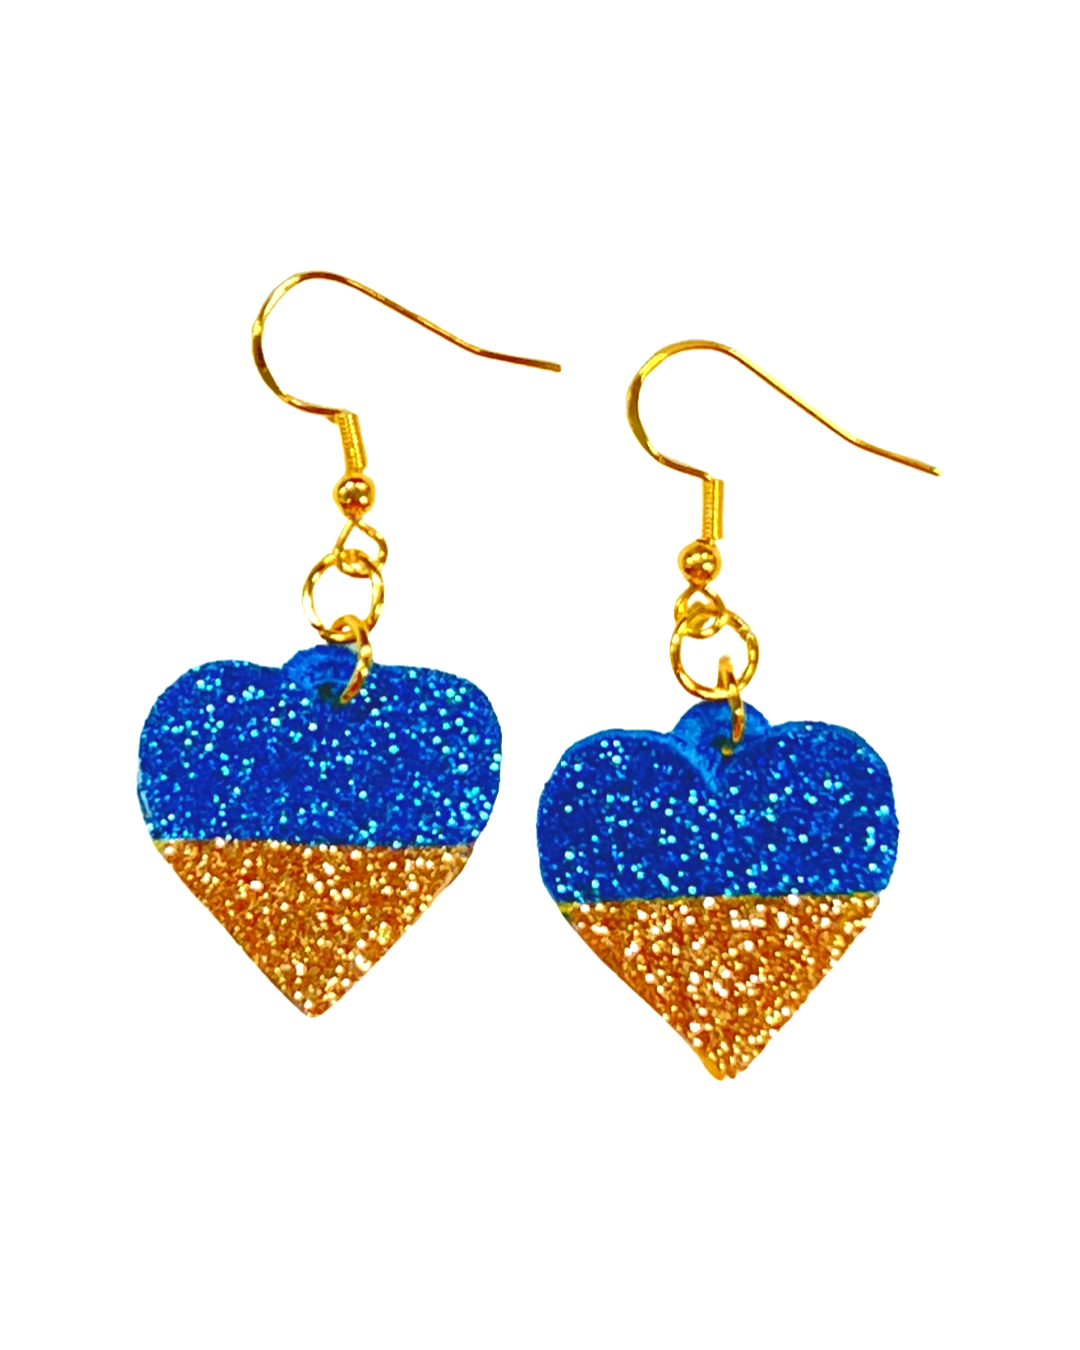 Lace earrings "Ukie heart"